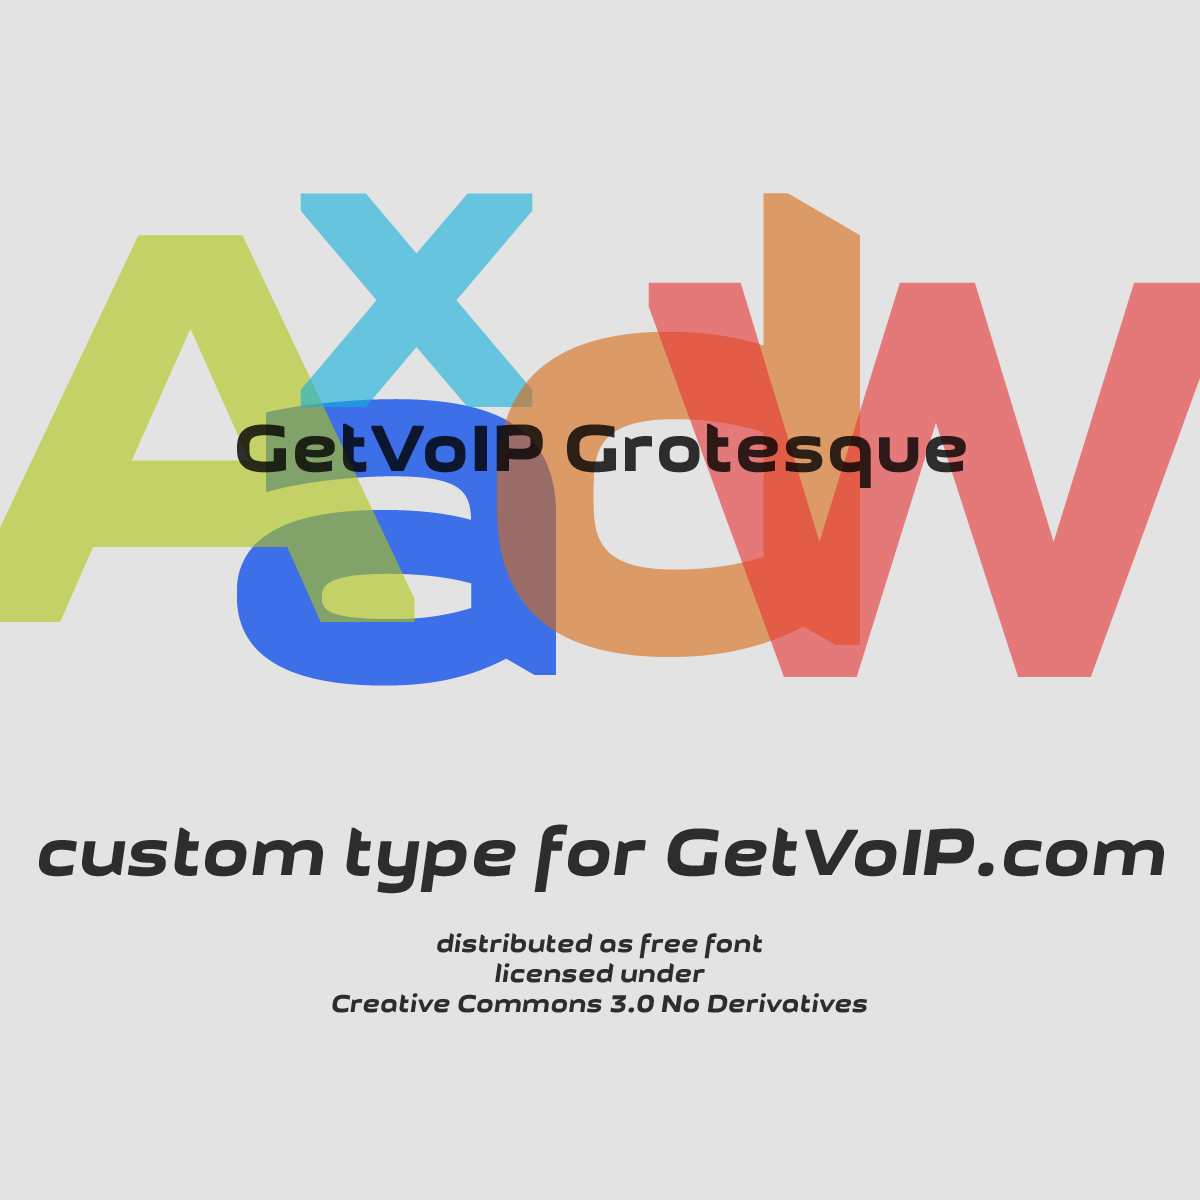 GetVoIP Grotesque Font